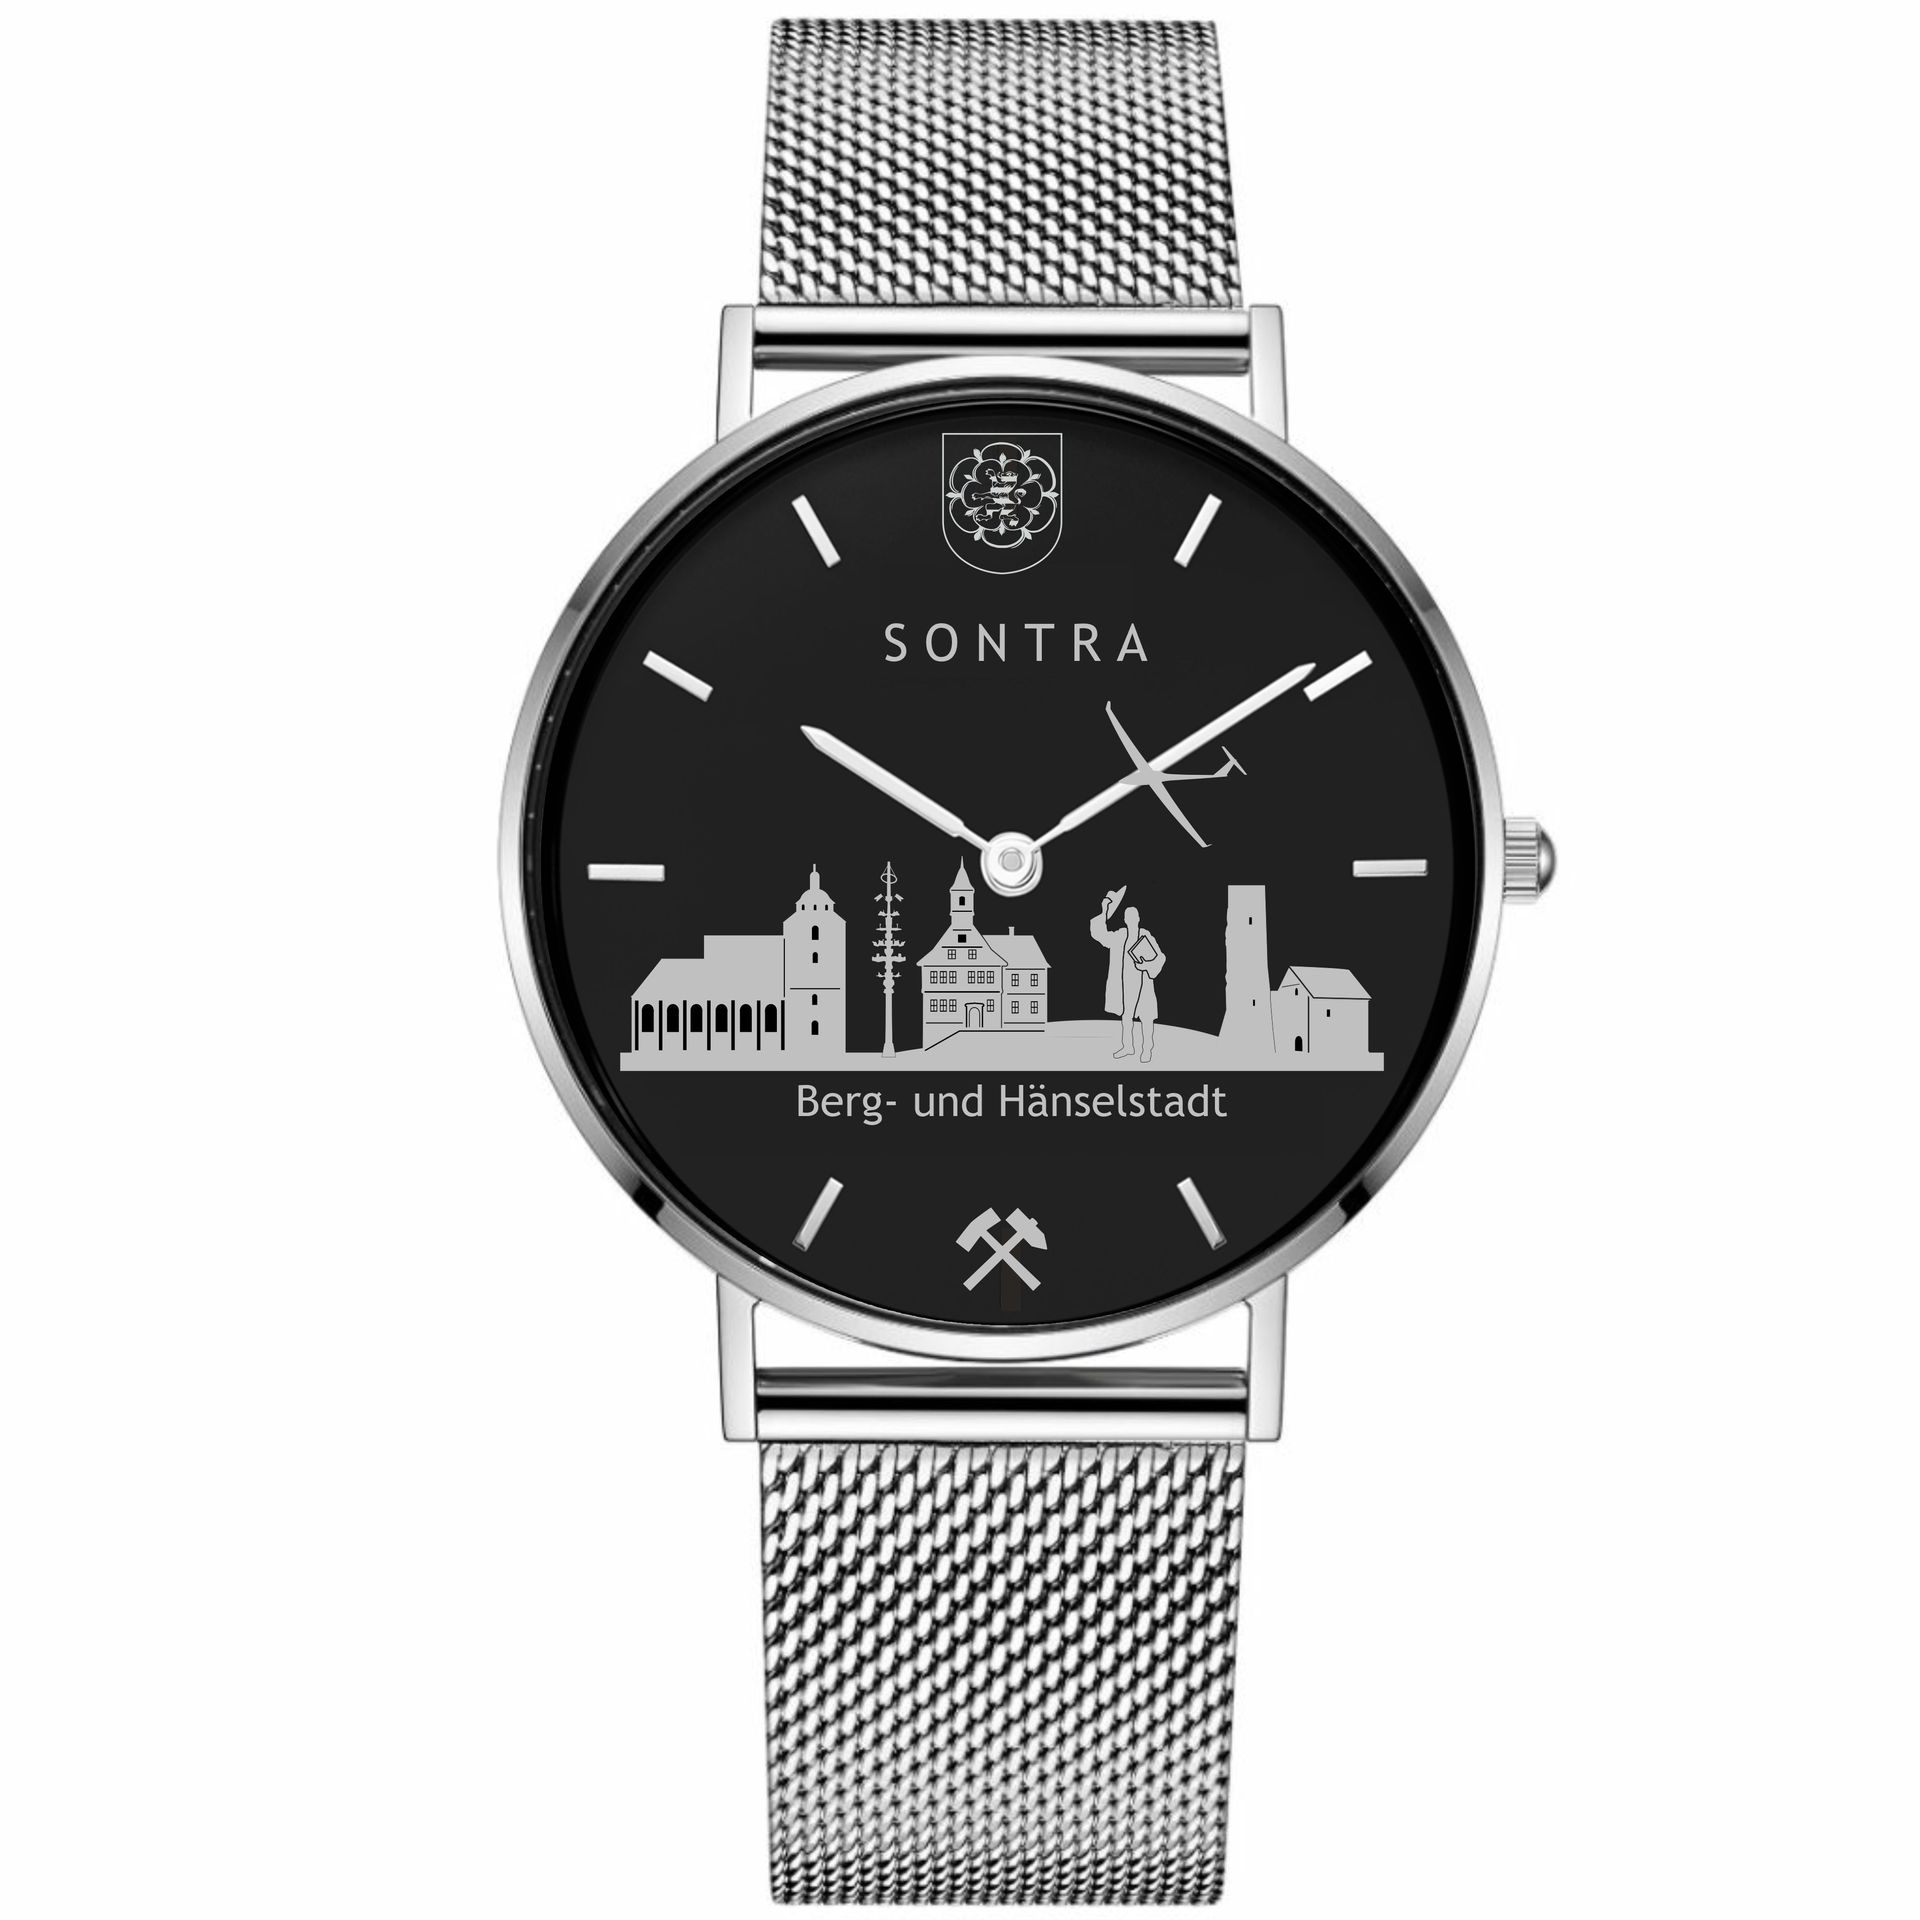 die neue Sontra-Uhr | Juwelier Kunze